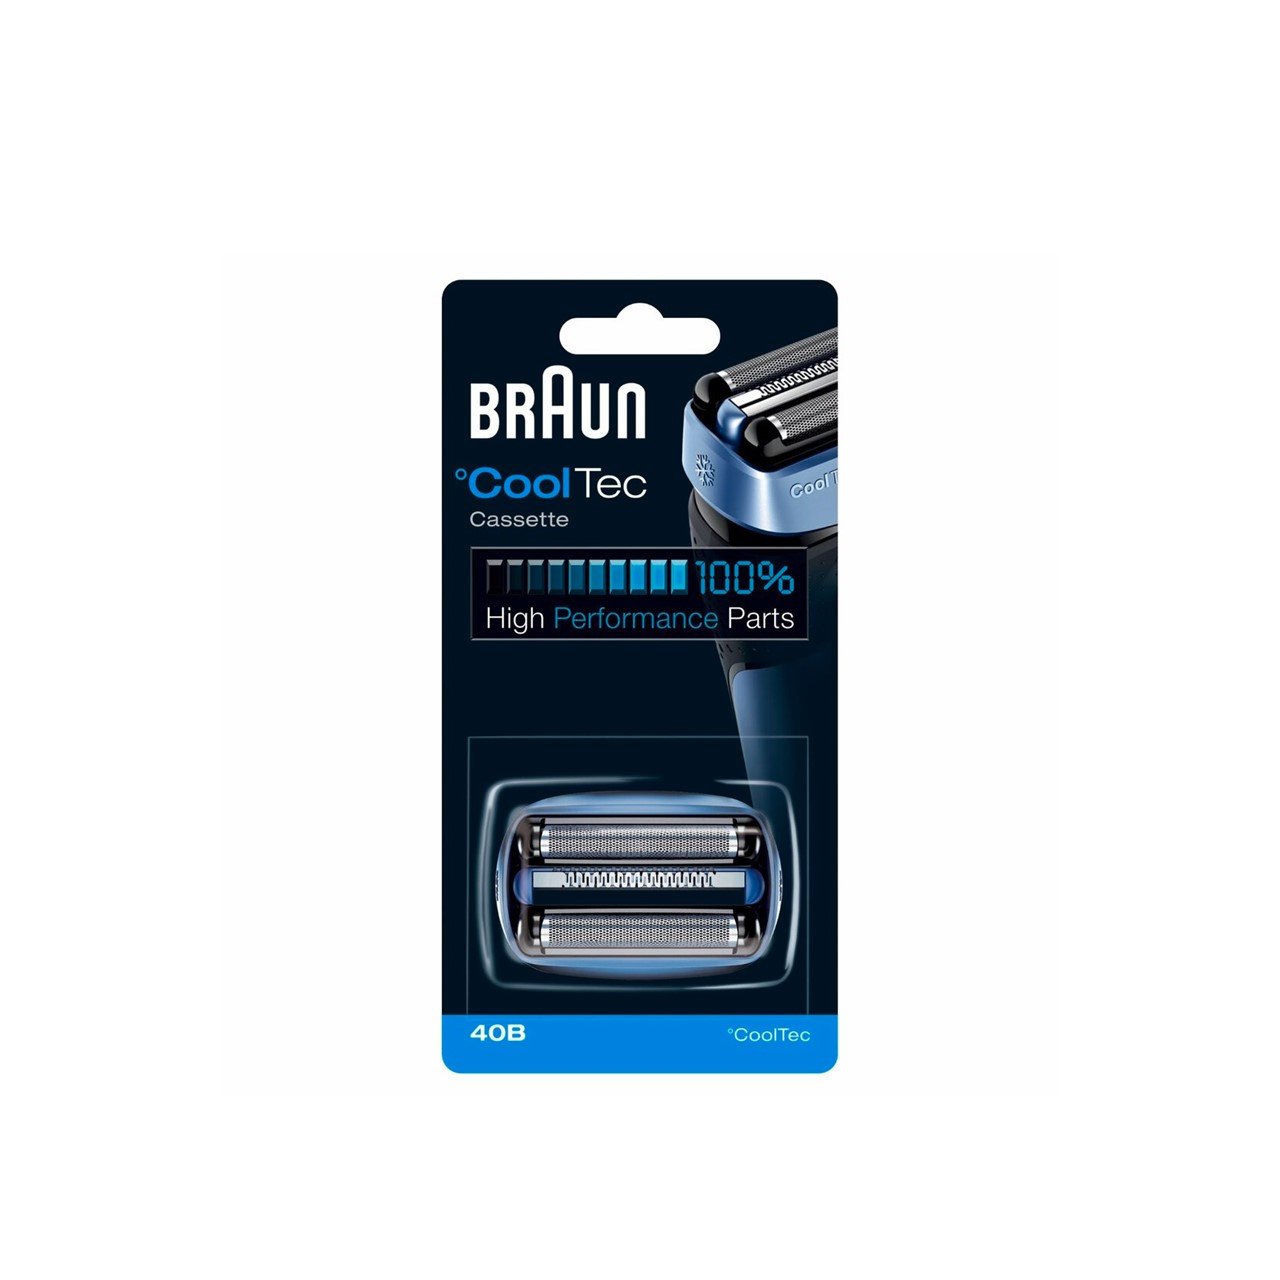 Oost ik ben ziek Benadering Kopen Braun Cool Tec Electric Shaver Cassette Replacement 40B · Nederland